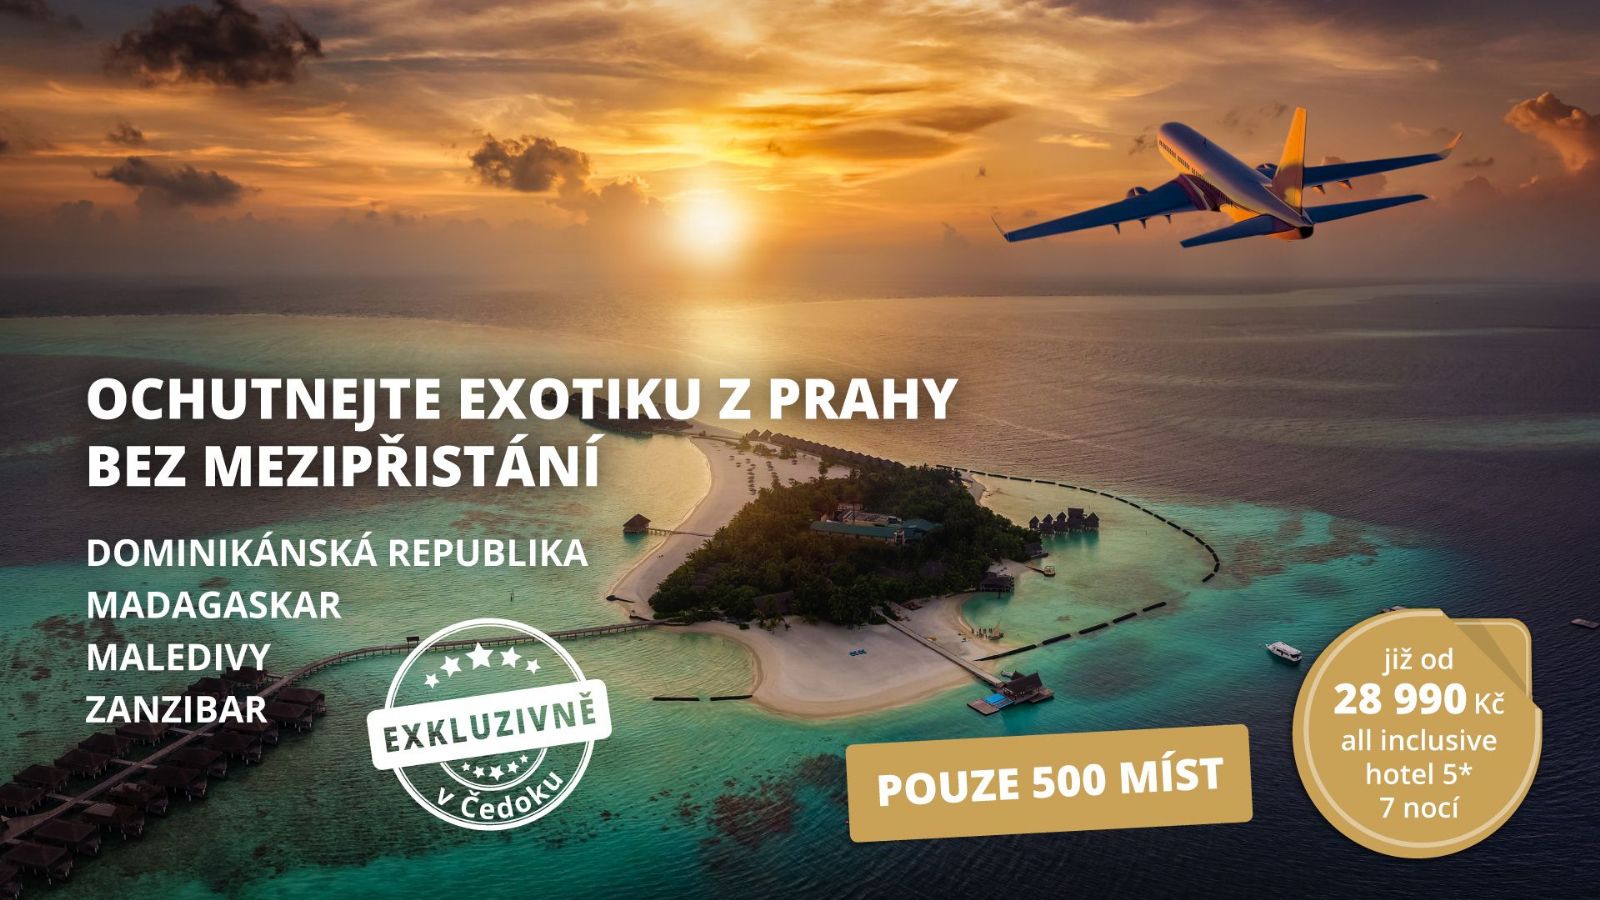 Cestovní kancelář Čedok nabídne přímé lety z Prahy do vzdálené exotiky